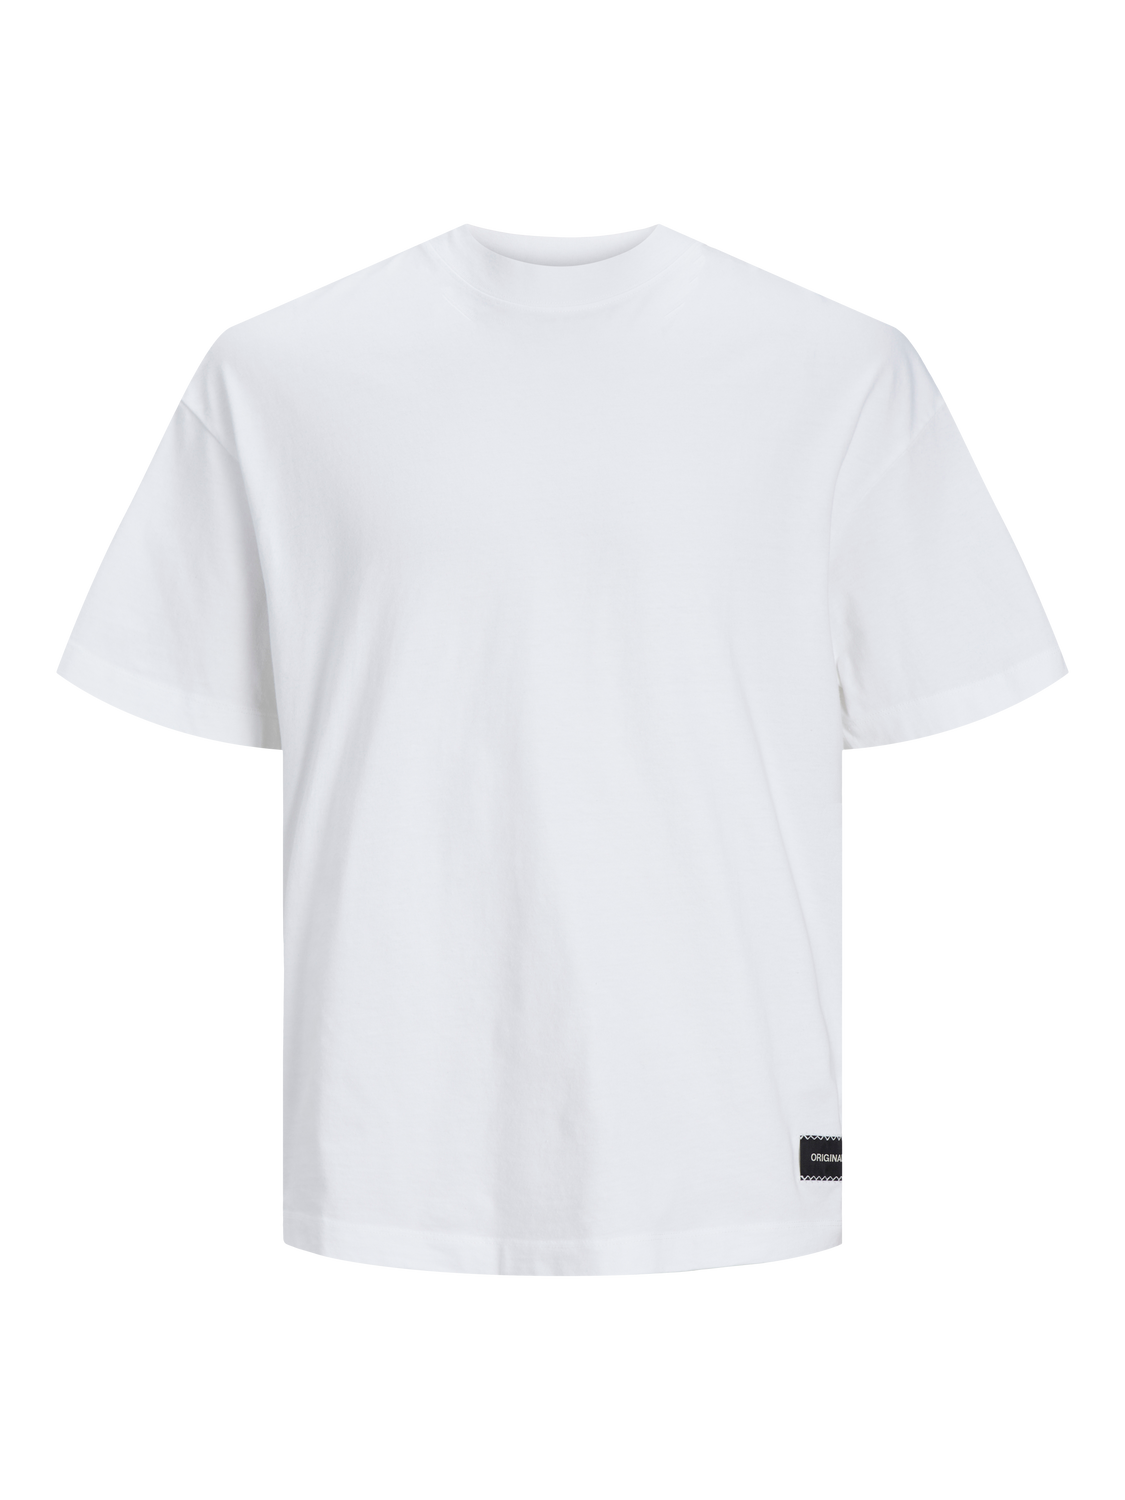 JORGRAND T-Shirt - Bright White